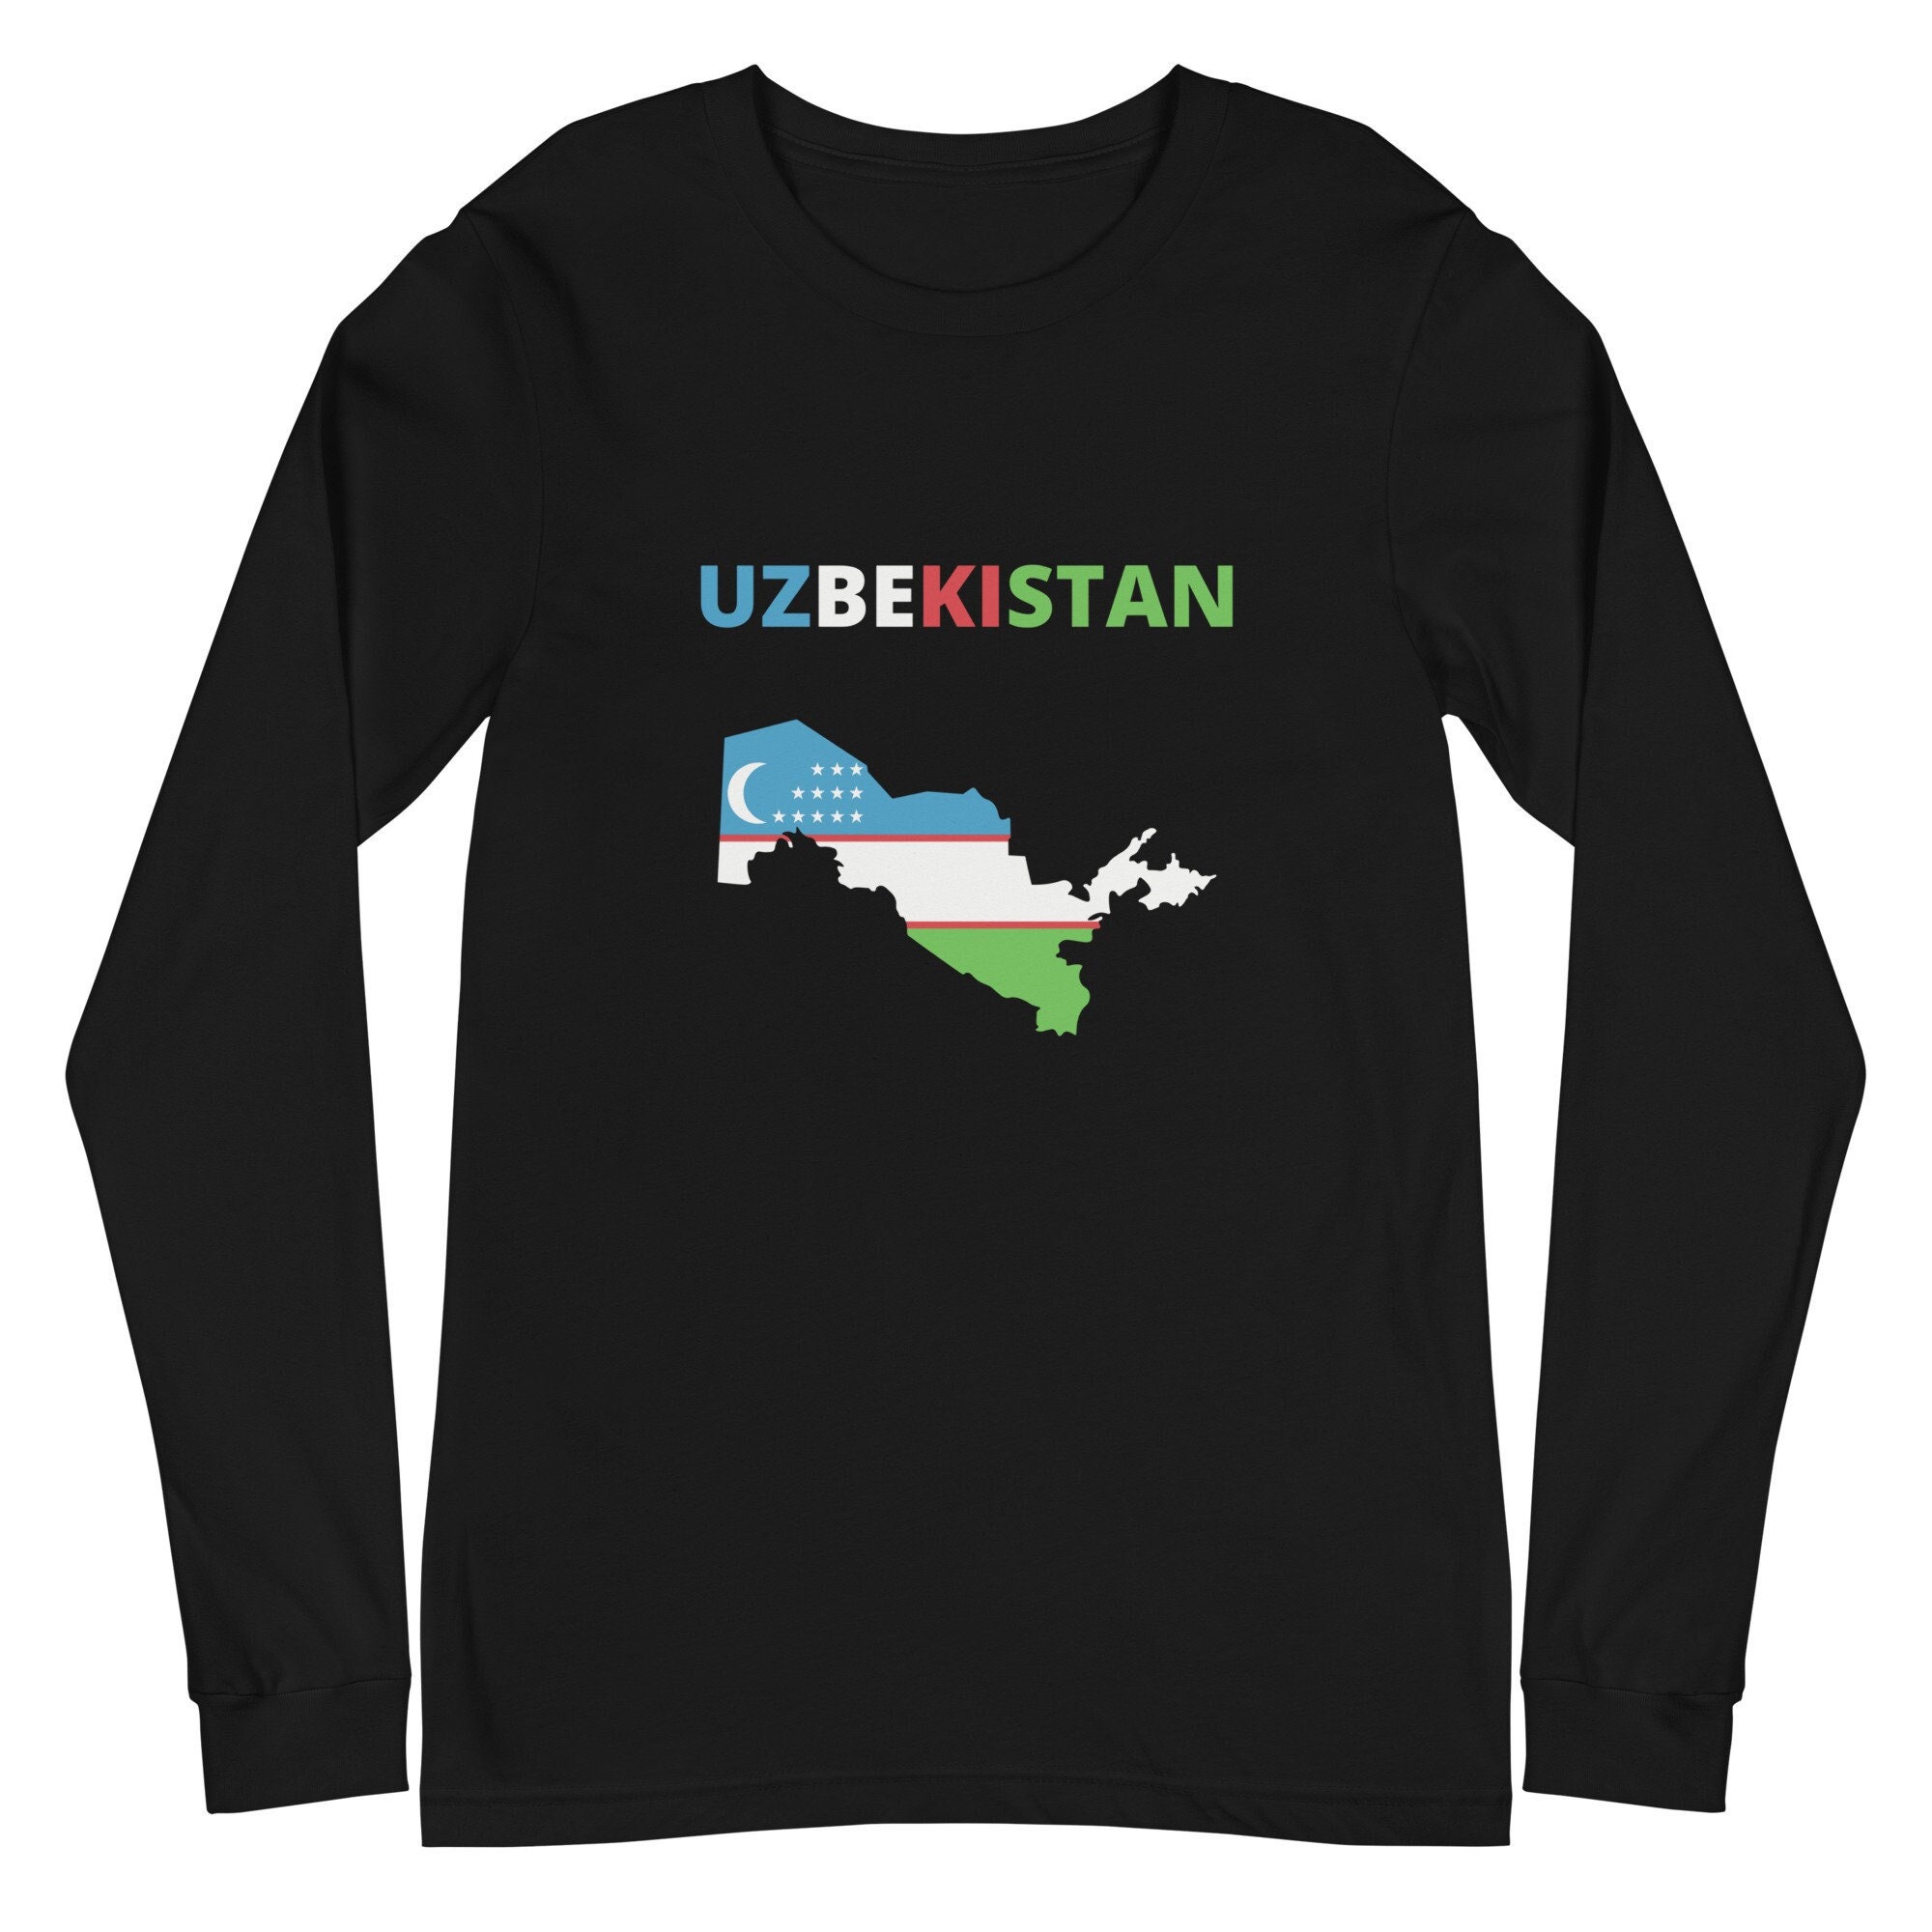 Kleding Unisex kinderkleding Sweaters 2 Oezbekistan vlag T-shirt voor kinderen 8-10 jaar & 6 jaar 